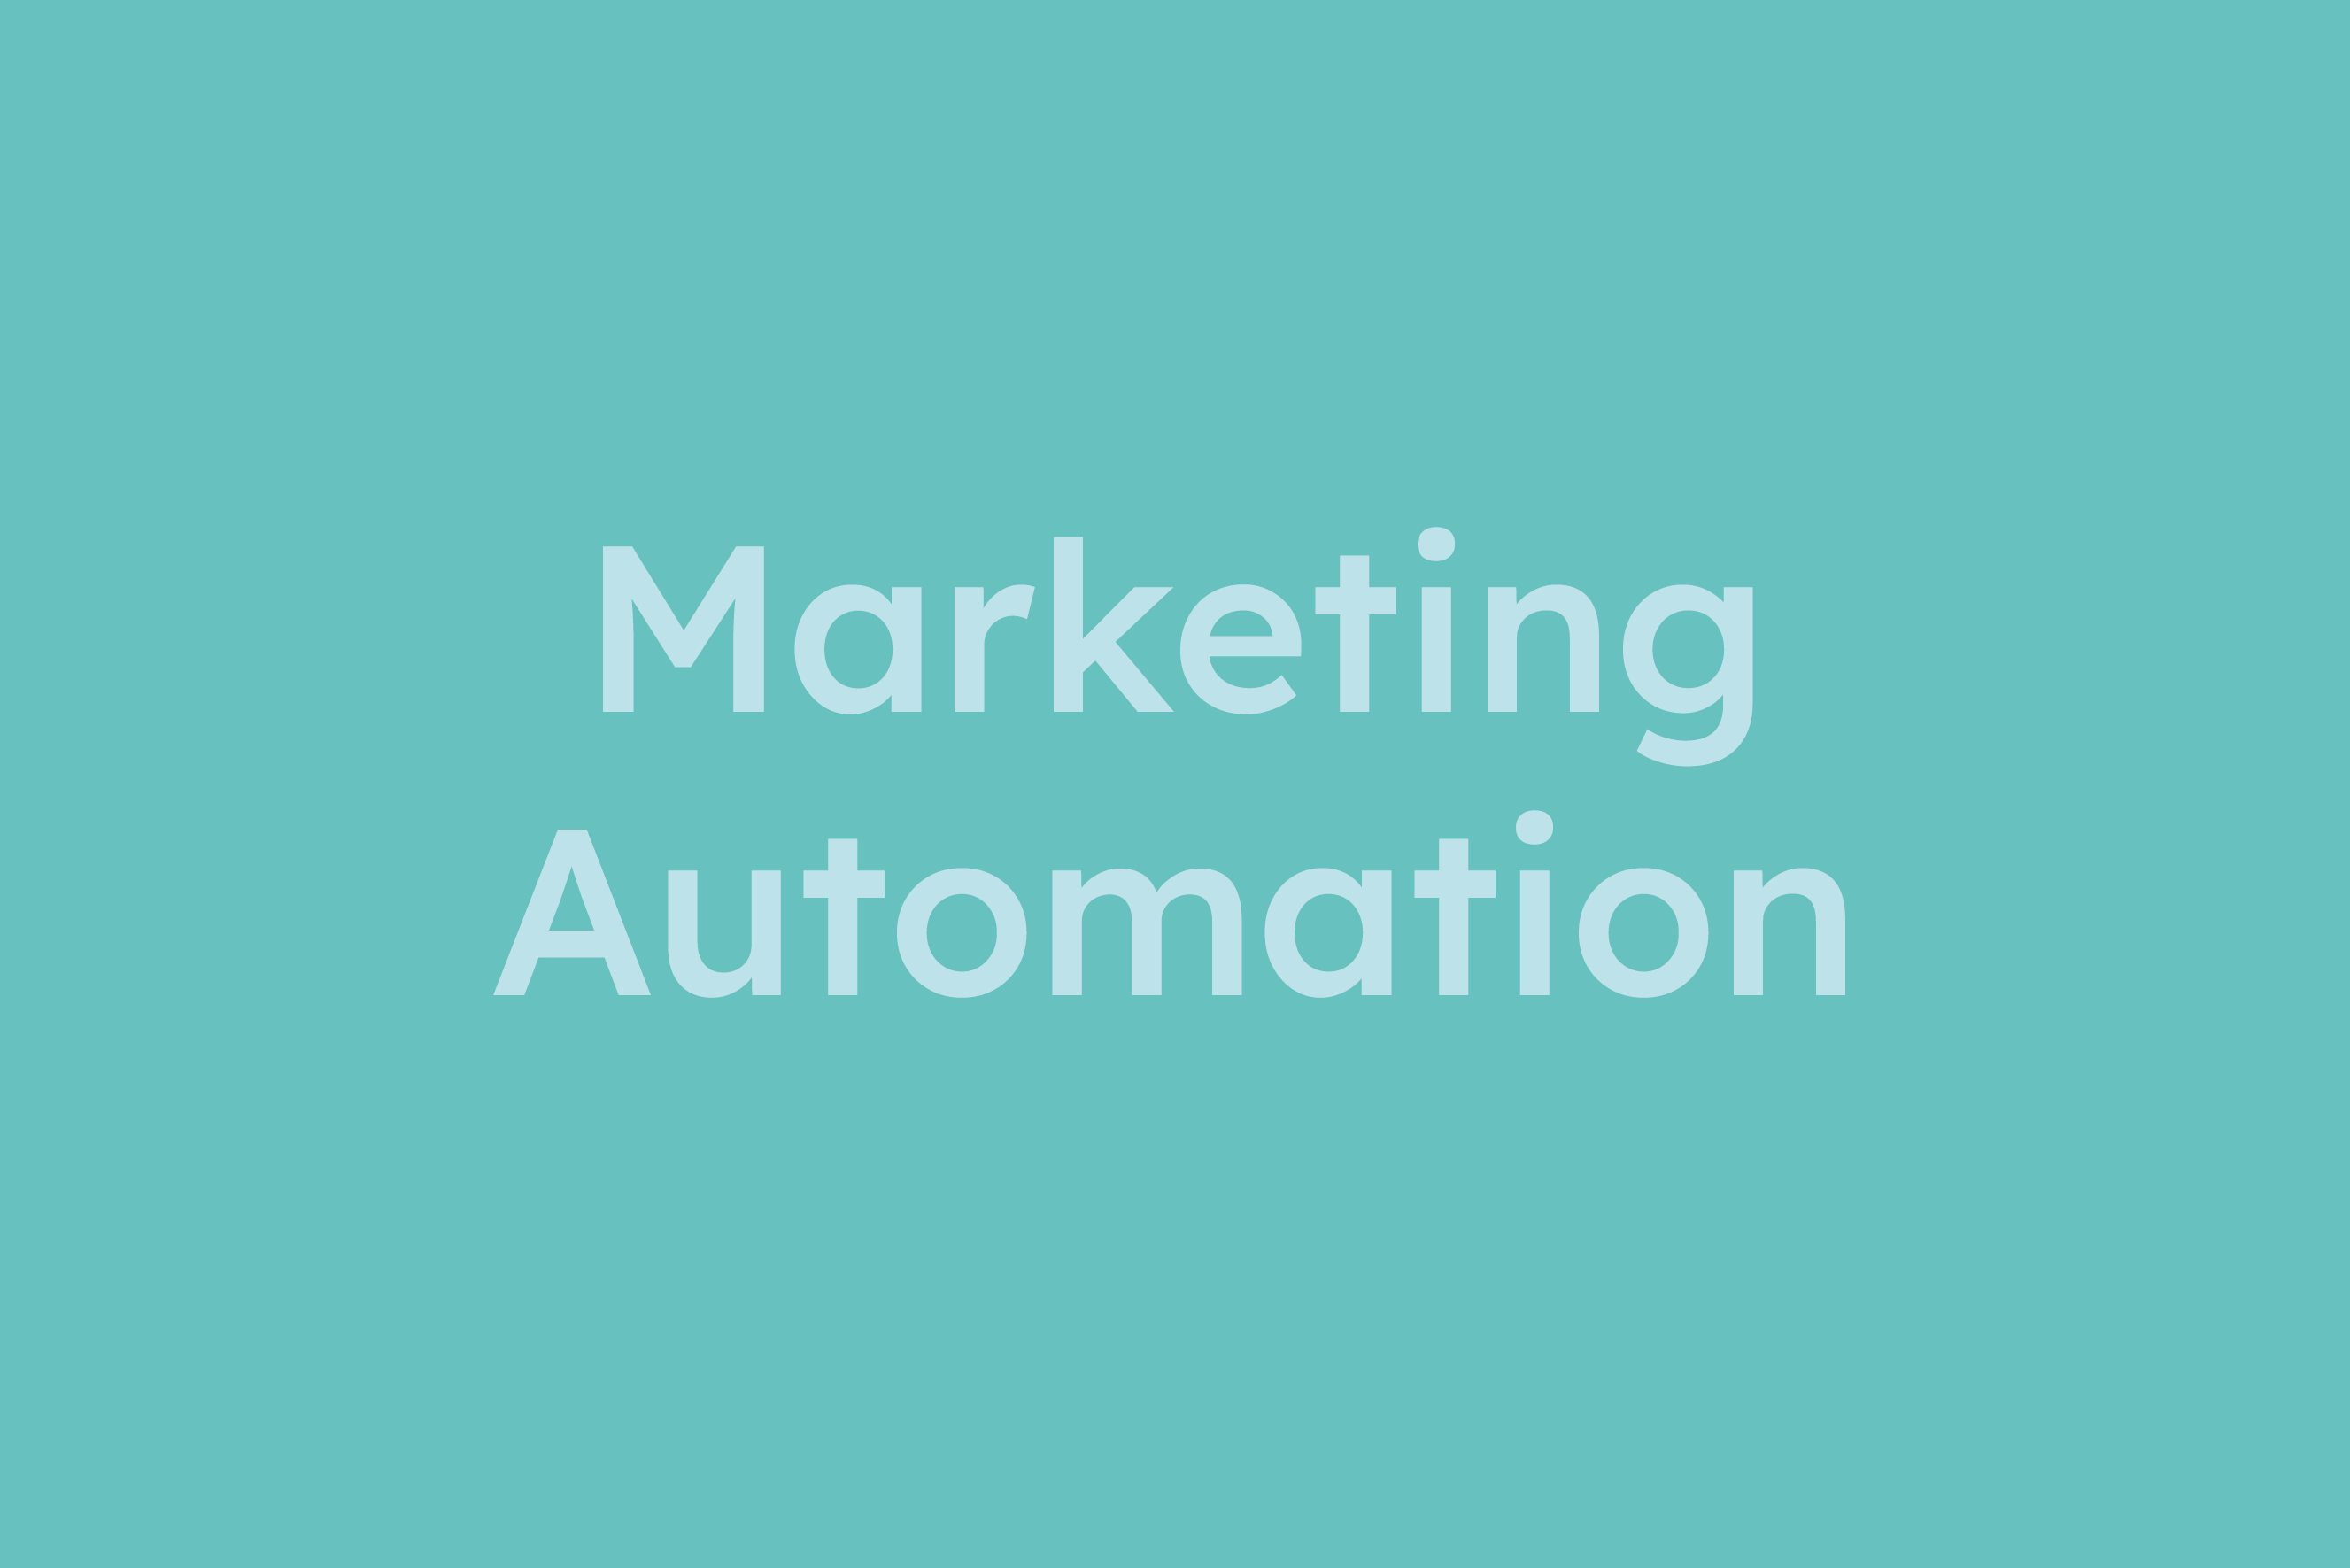 Marketing Automation erklärt im Glossar von Campaign